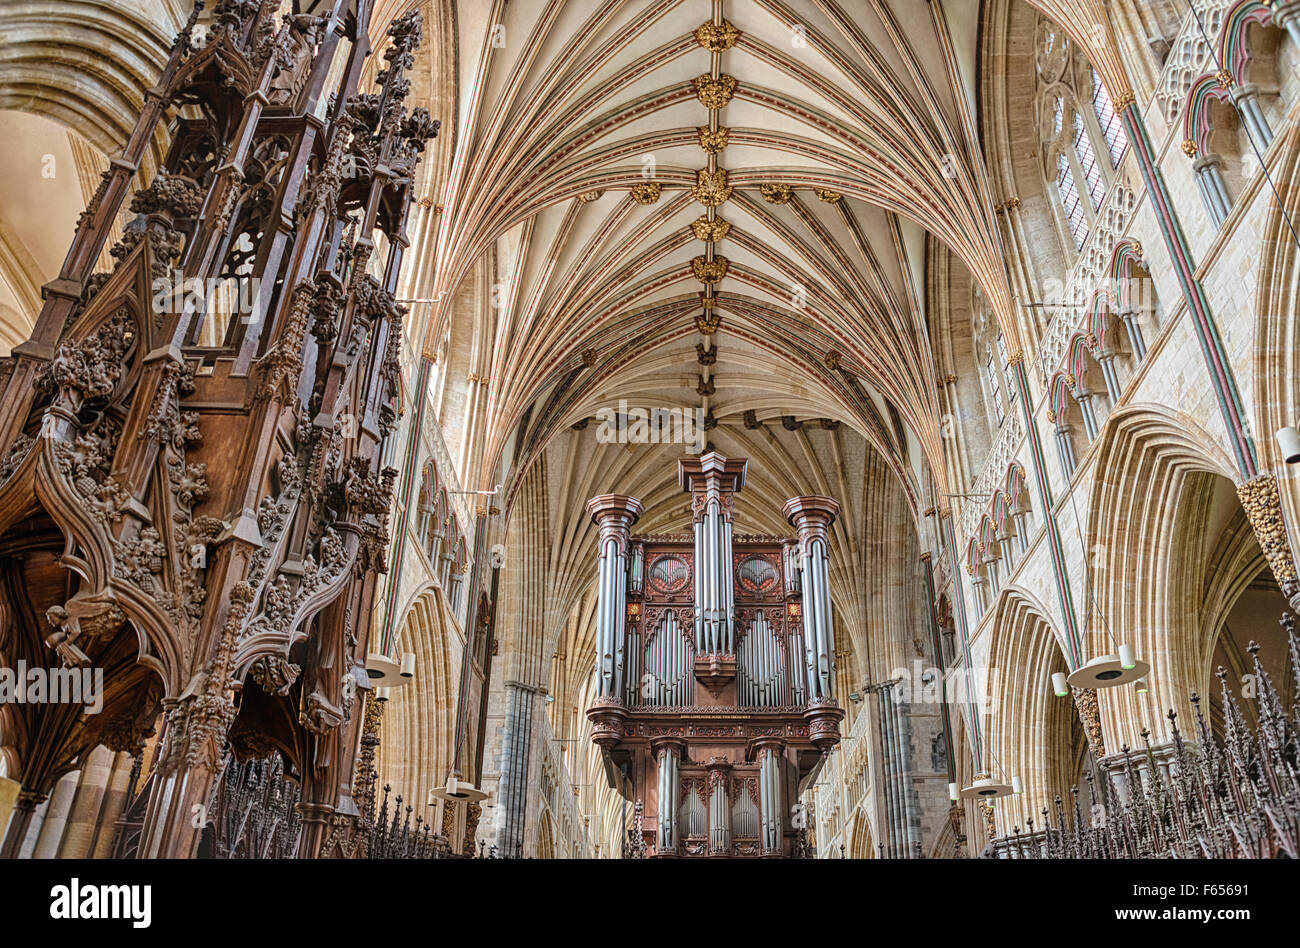 Interieur und Orgel von Exeter Kathedrale, Devon, England, UK Stockfoto